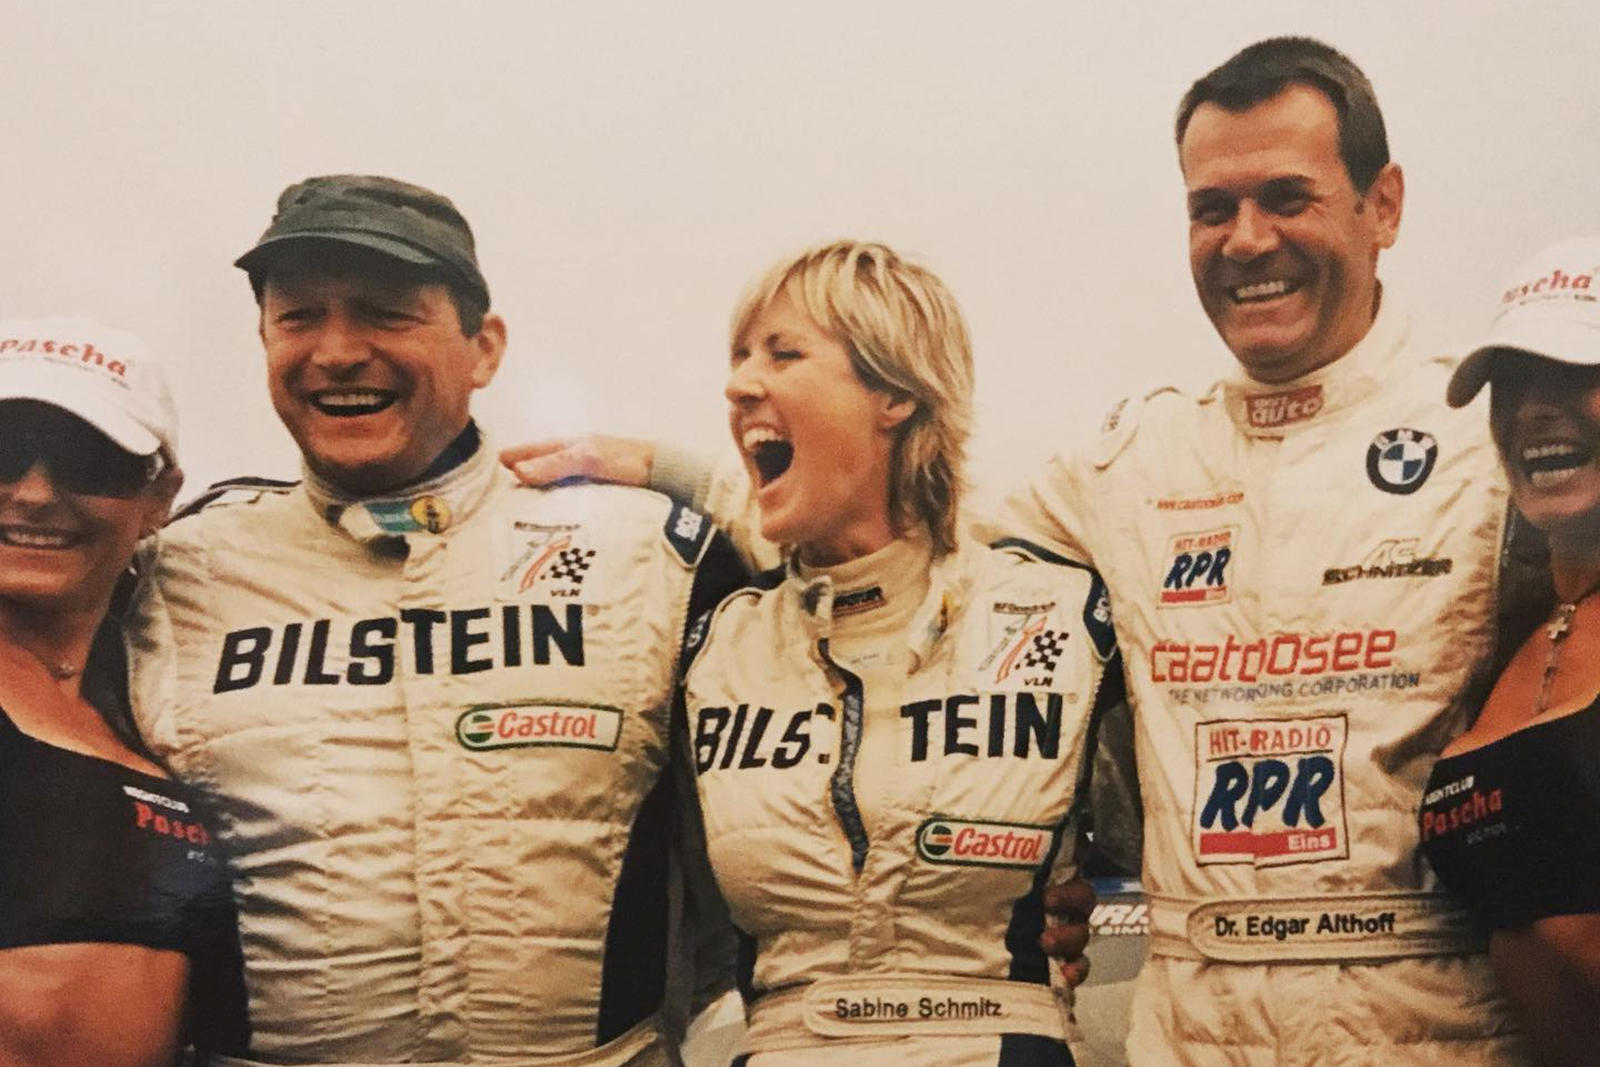 В 1996 году она стала первой женщиной, которая одержала общую победу на 24 часах Нюрбургринга за рулем легендарного BMW M3 «Eifelblitz». Ее штурманами были Йоханнес Шайд и Ханс Видманн. В следующем году она повторила эту победу. В 1998 году она преод